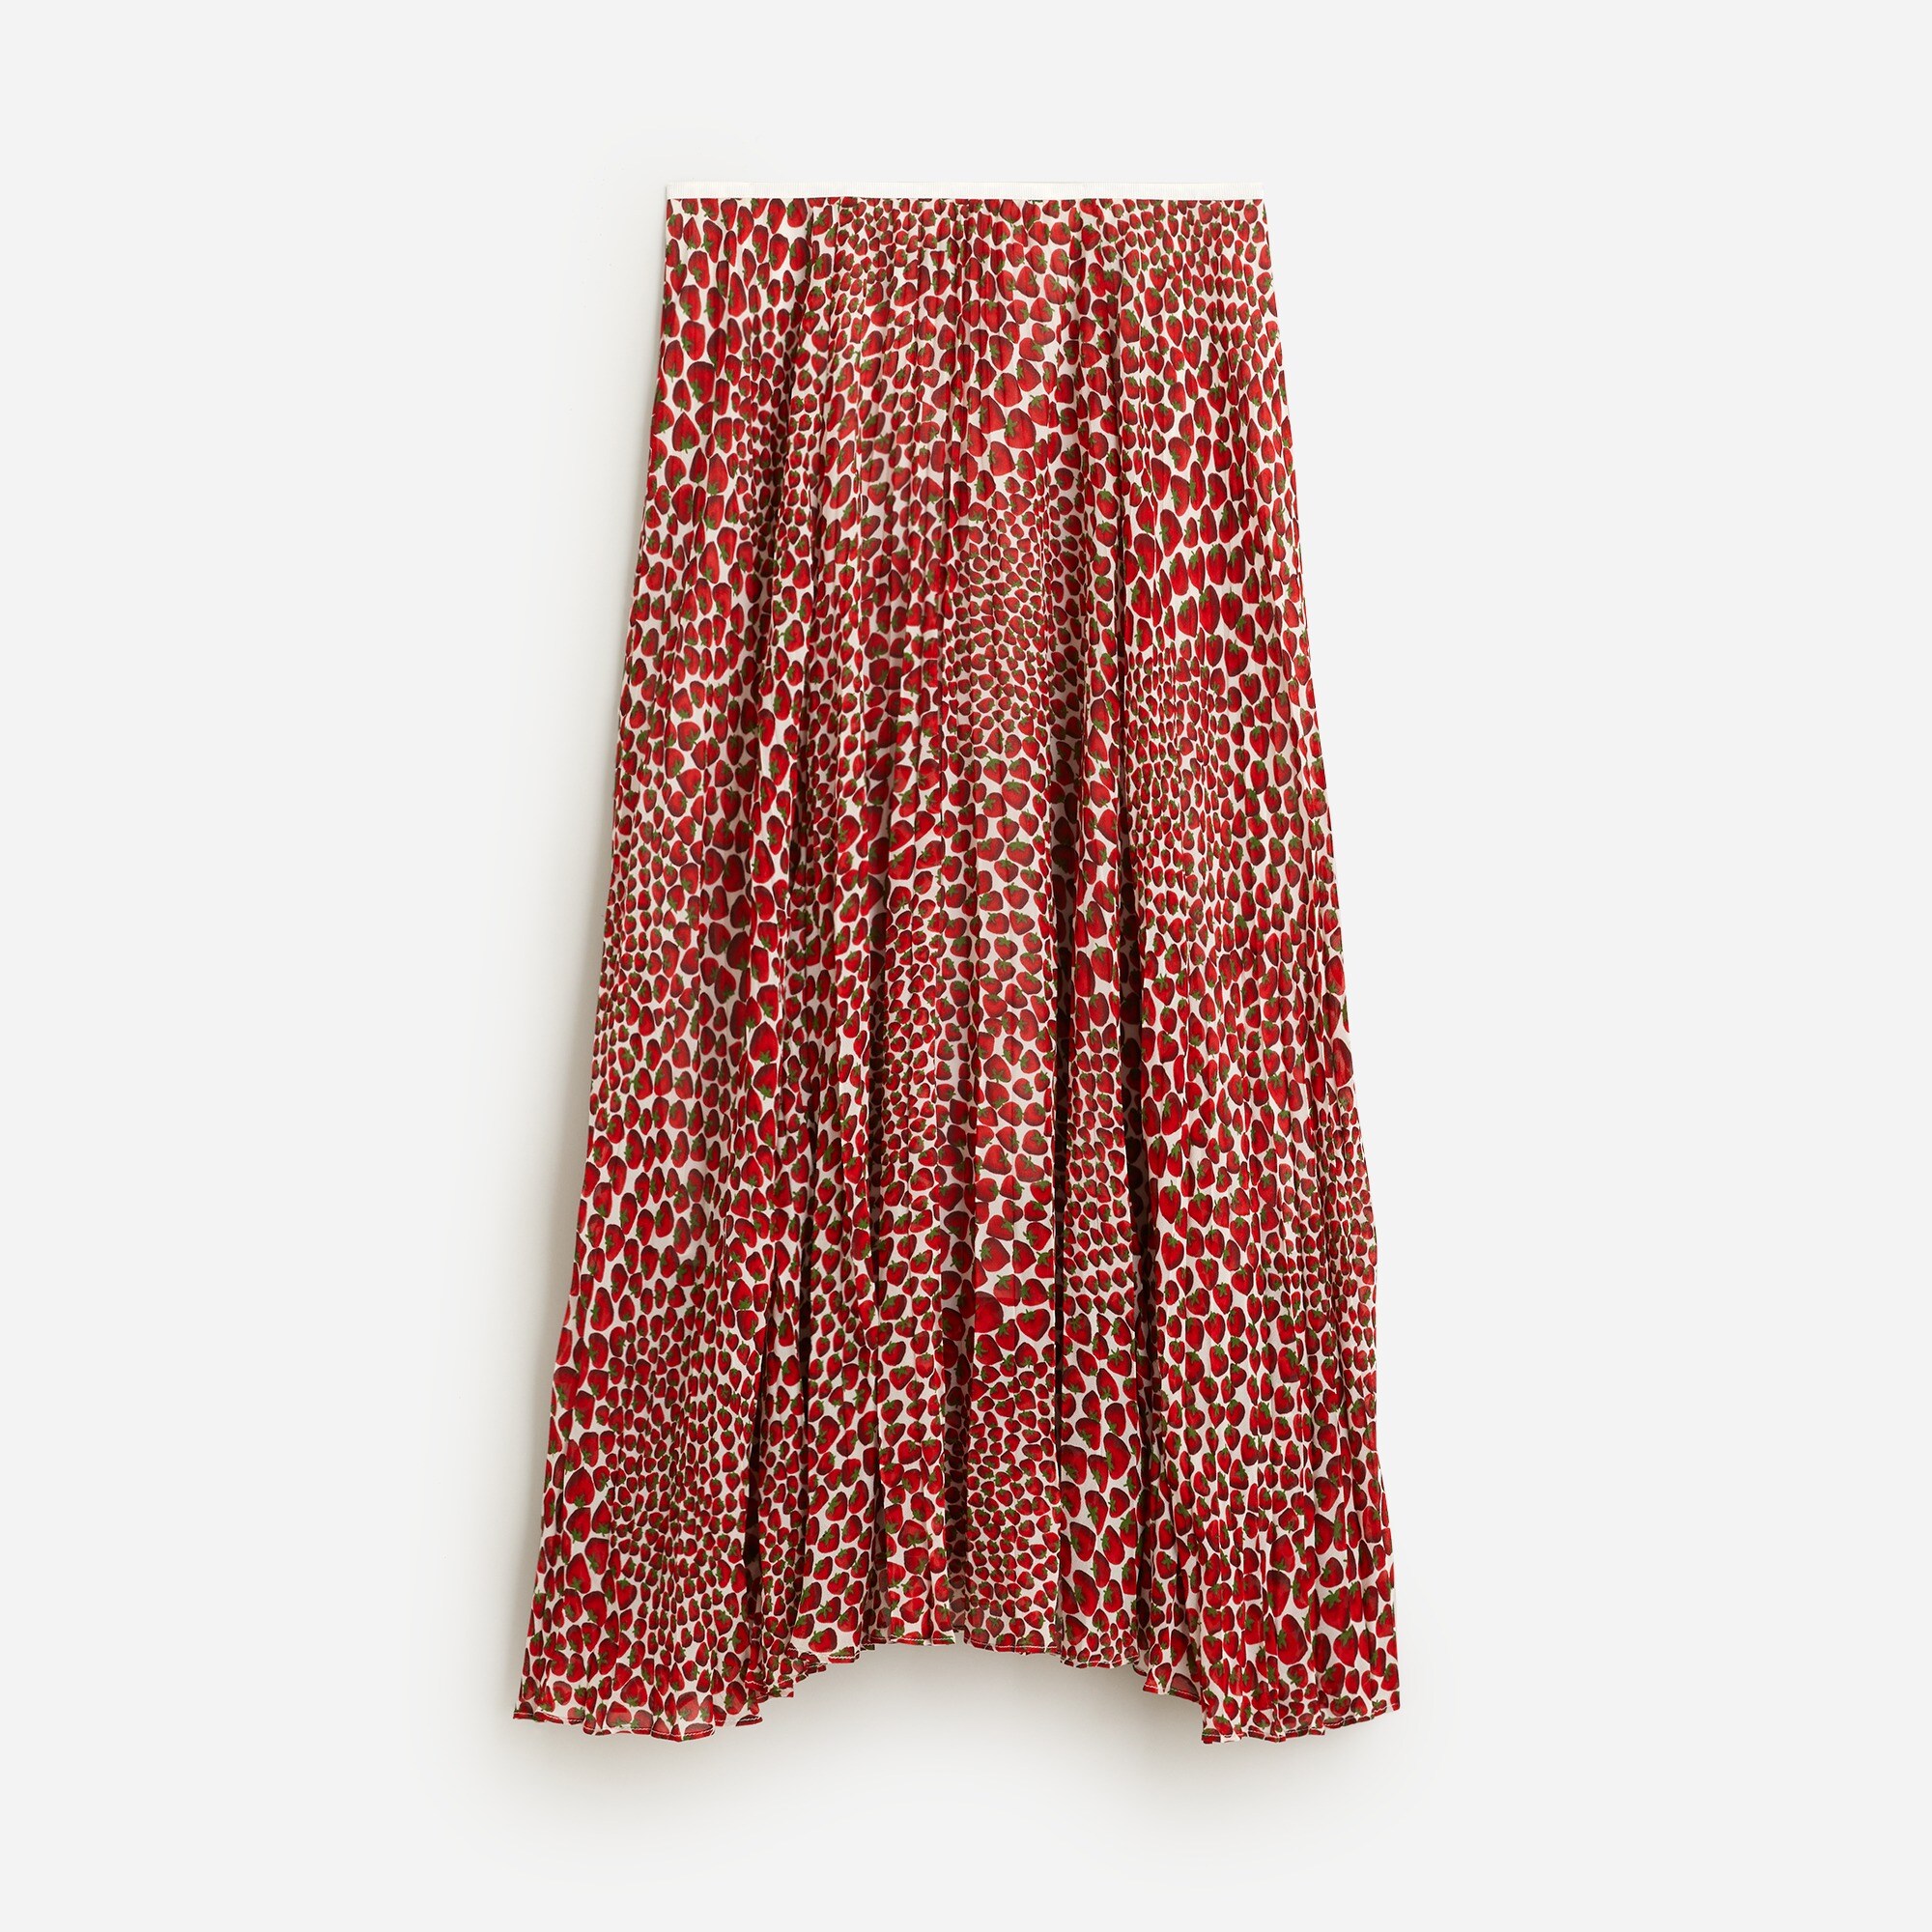  Gwyneth pleated skirt in strawberry swirl chiffon